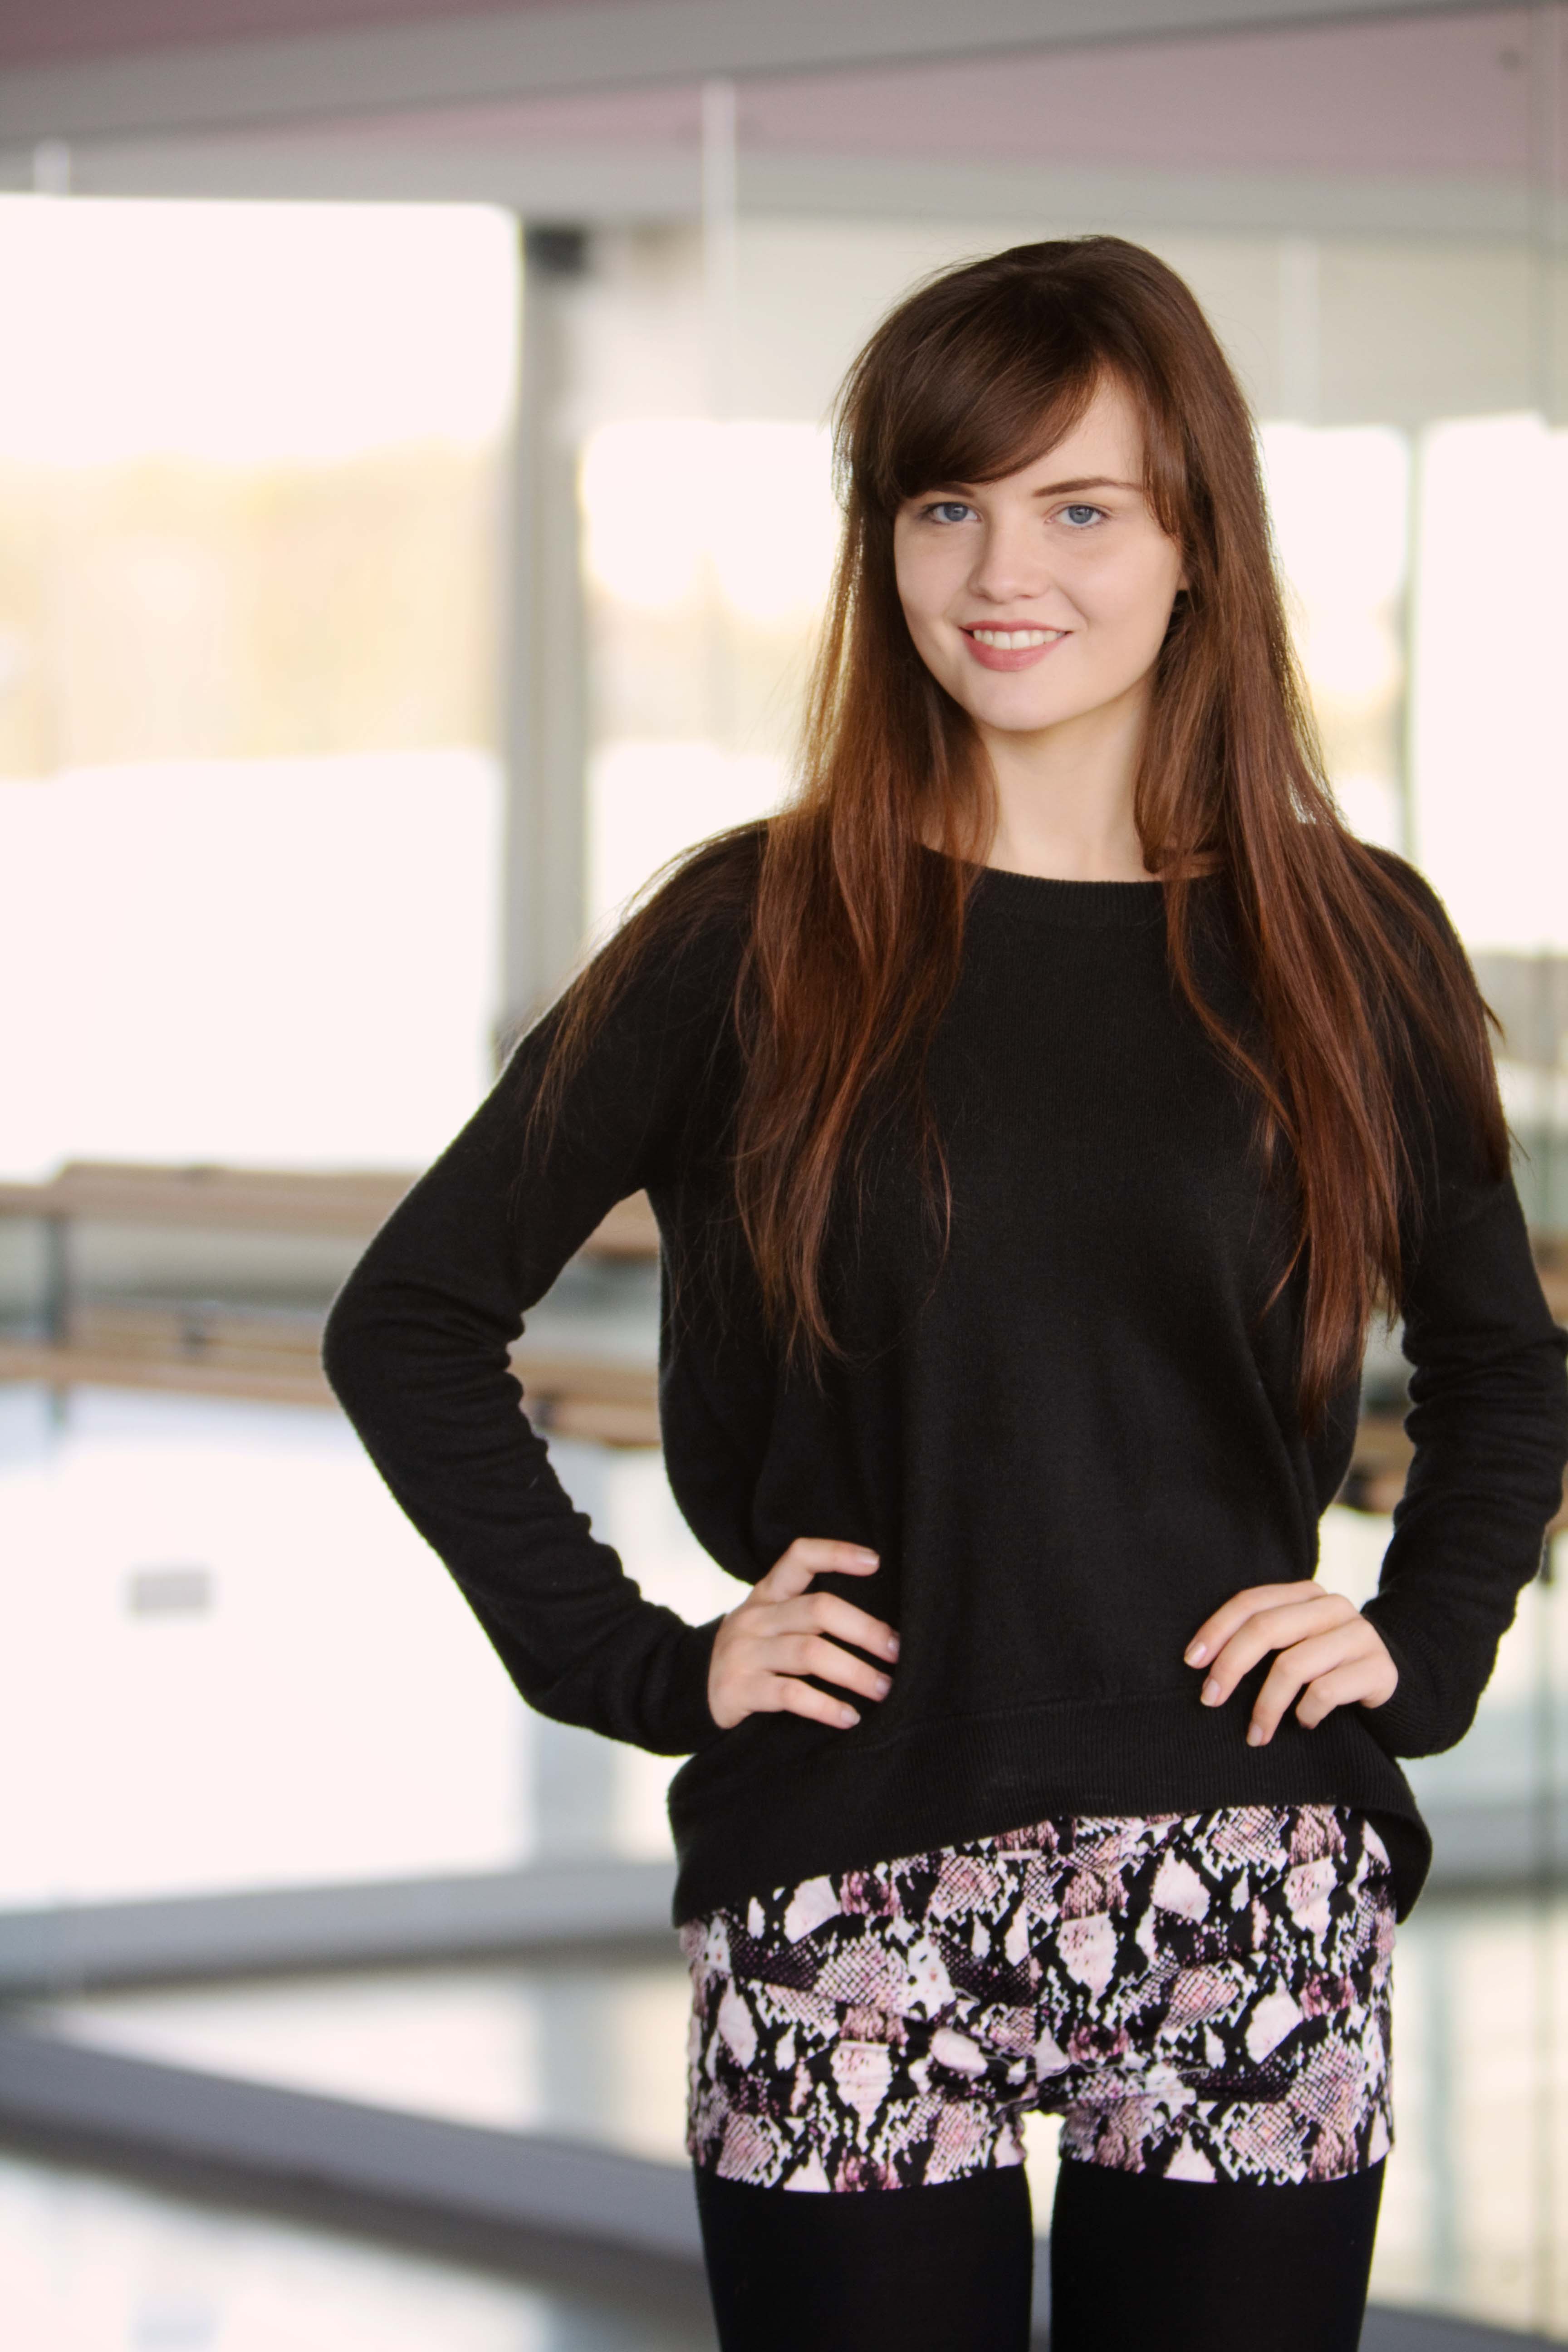 UK teen blogger wearing black sweater